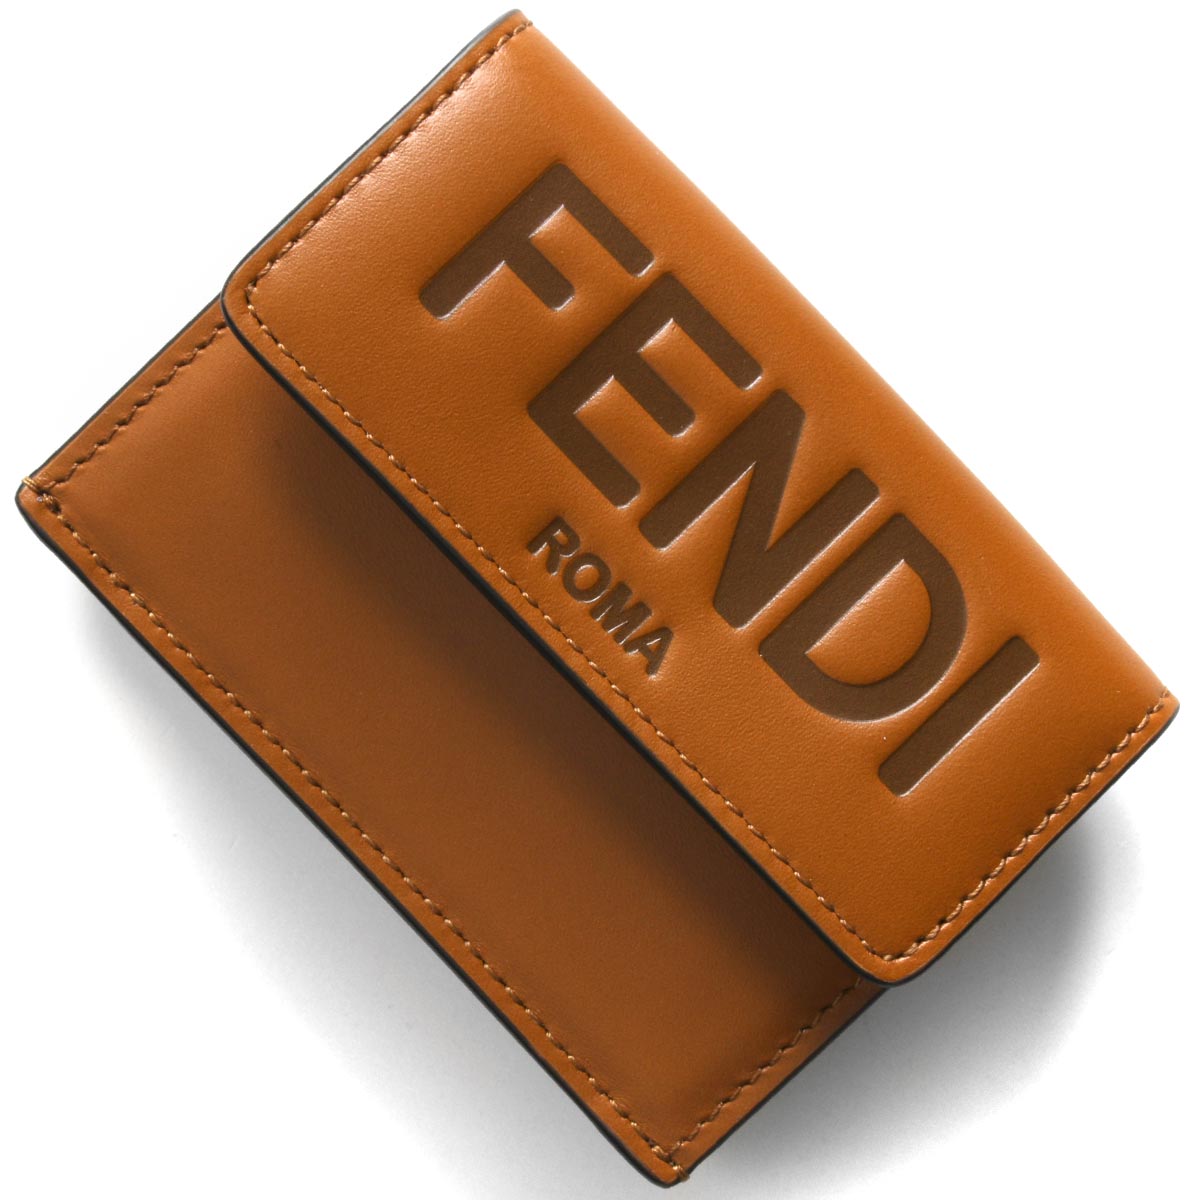 FENDI 財布 三つ折り ミニ財布 FENDI ROMA